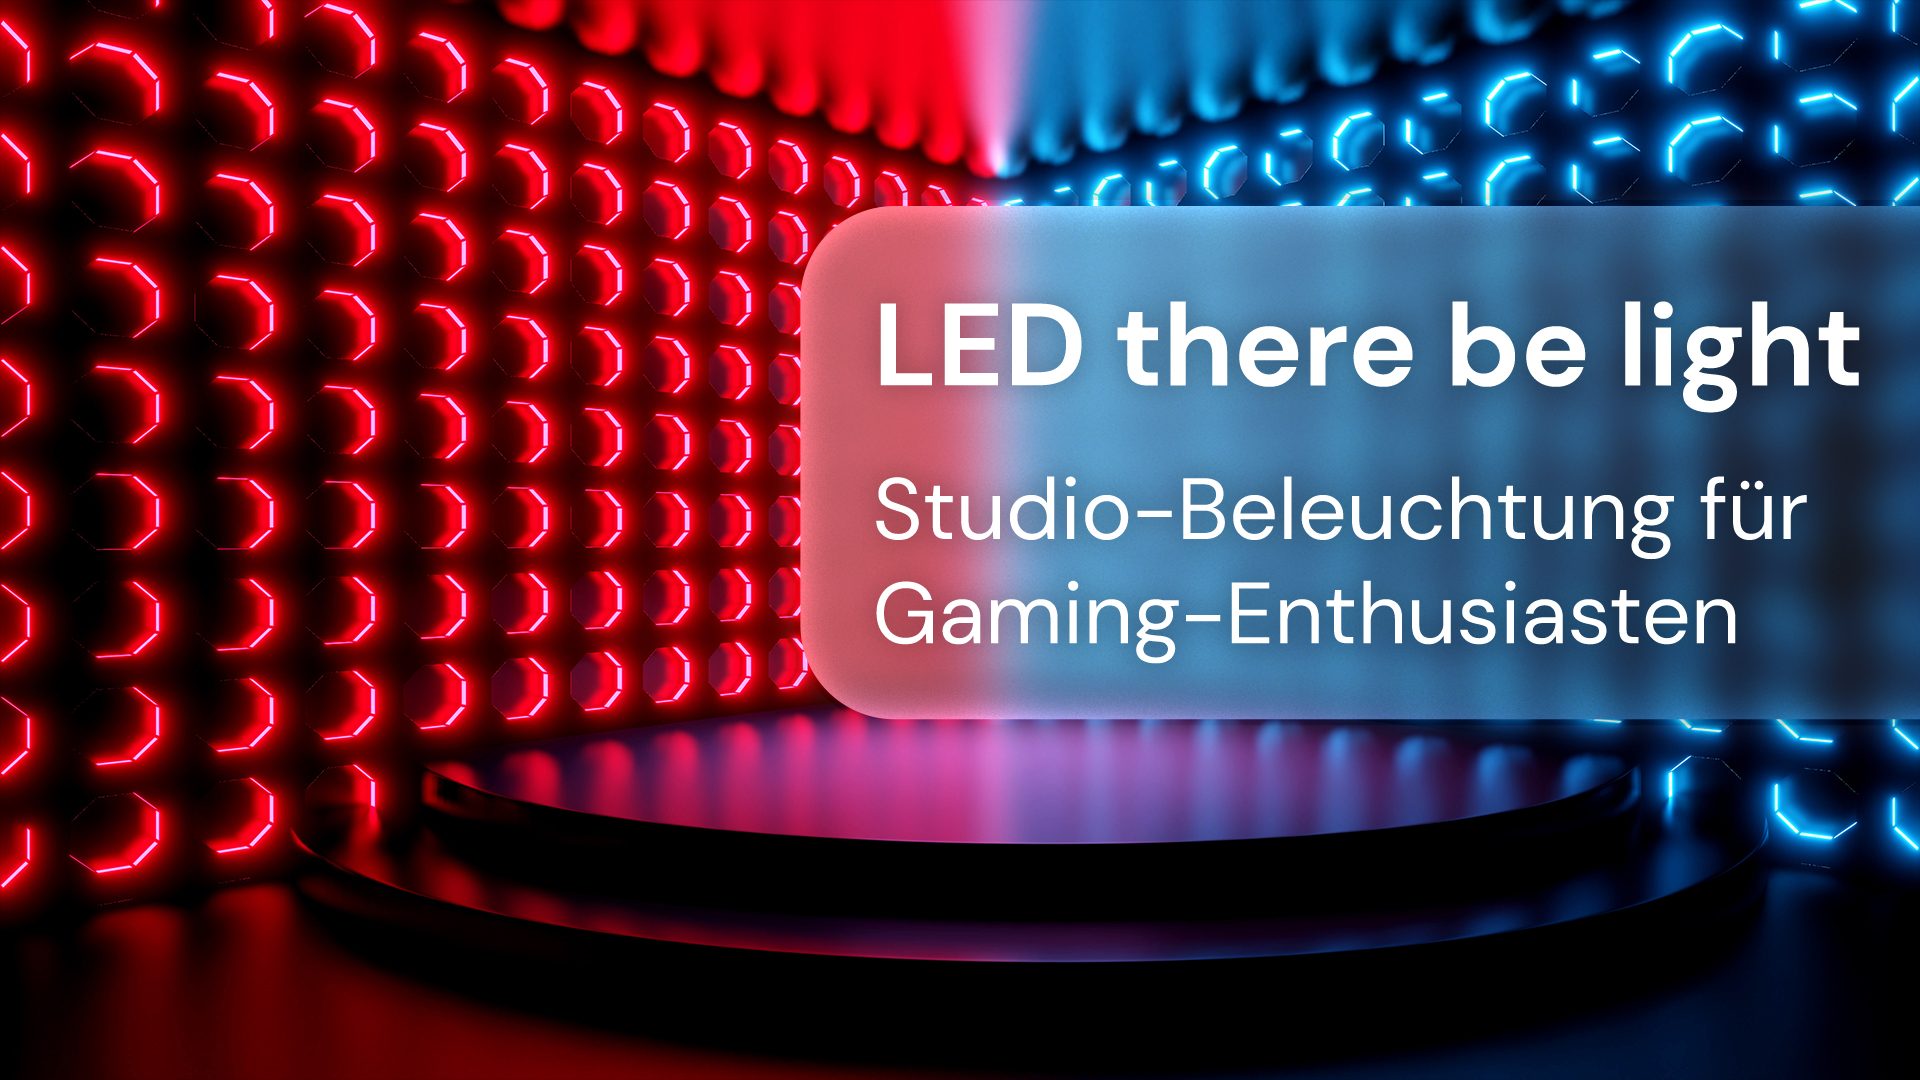 Studio-Beleuchtung für Gaming-Enthusiasten @